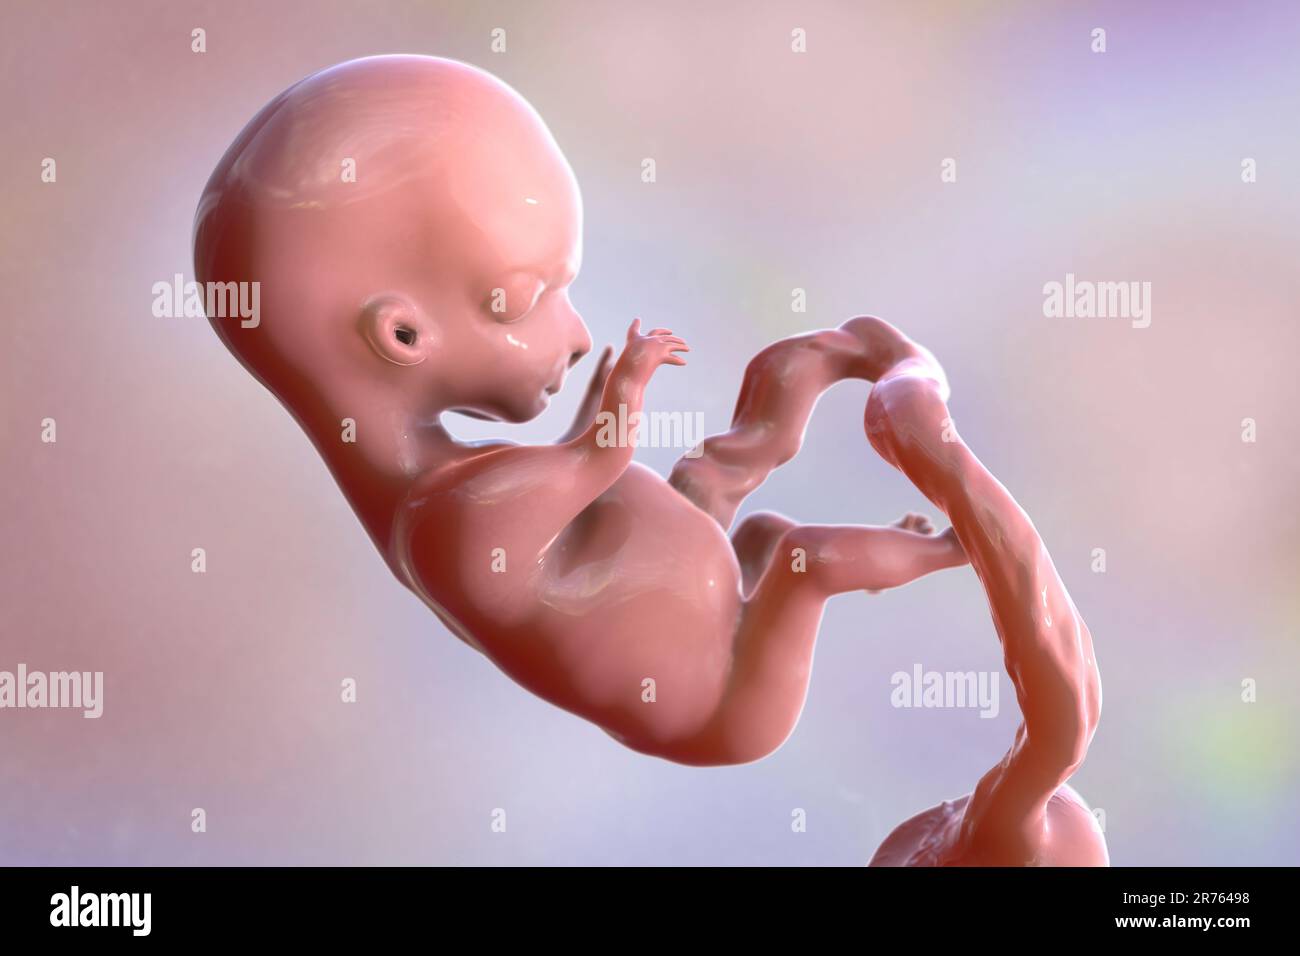 Fœtus humain, illustration informatique. Période foetale précoce, semaine 8 - semaine 16 Banque D'Images